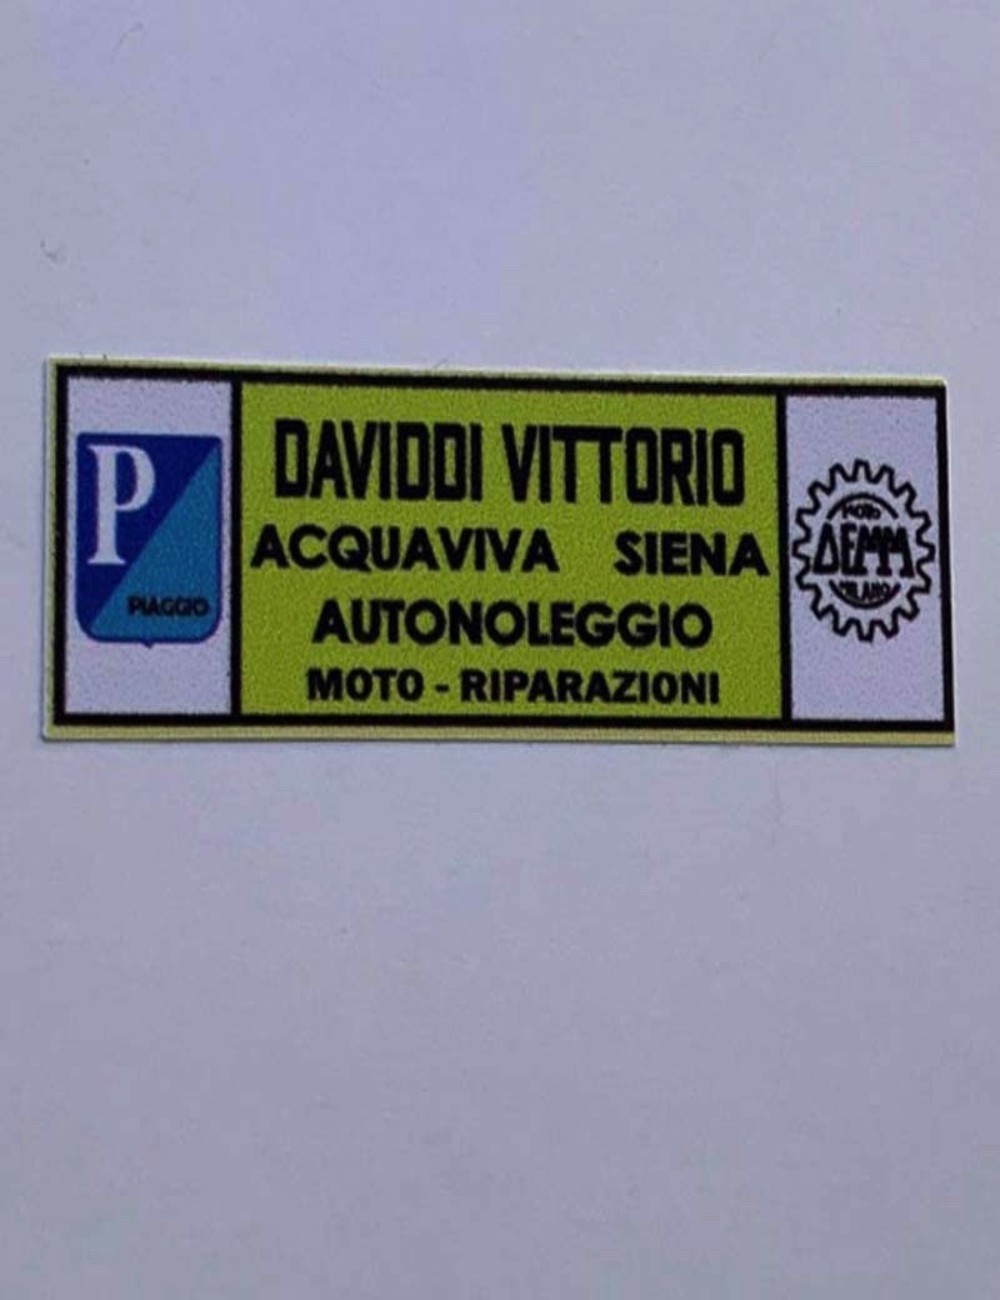 Adesivo concessionario Daviddi Vittorio. Dimensioni: 5,3 cm x 5 cm.